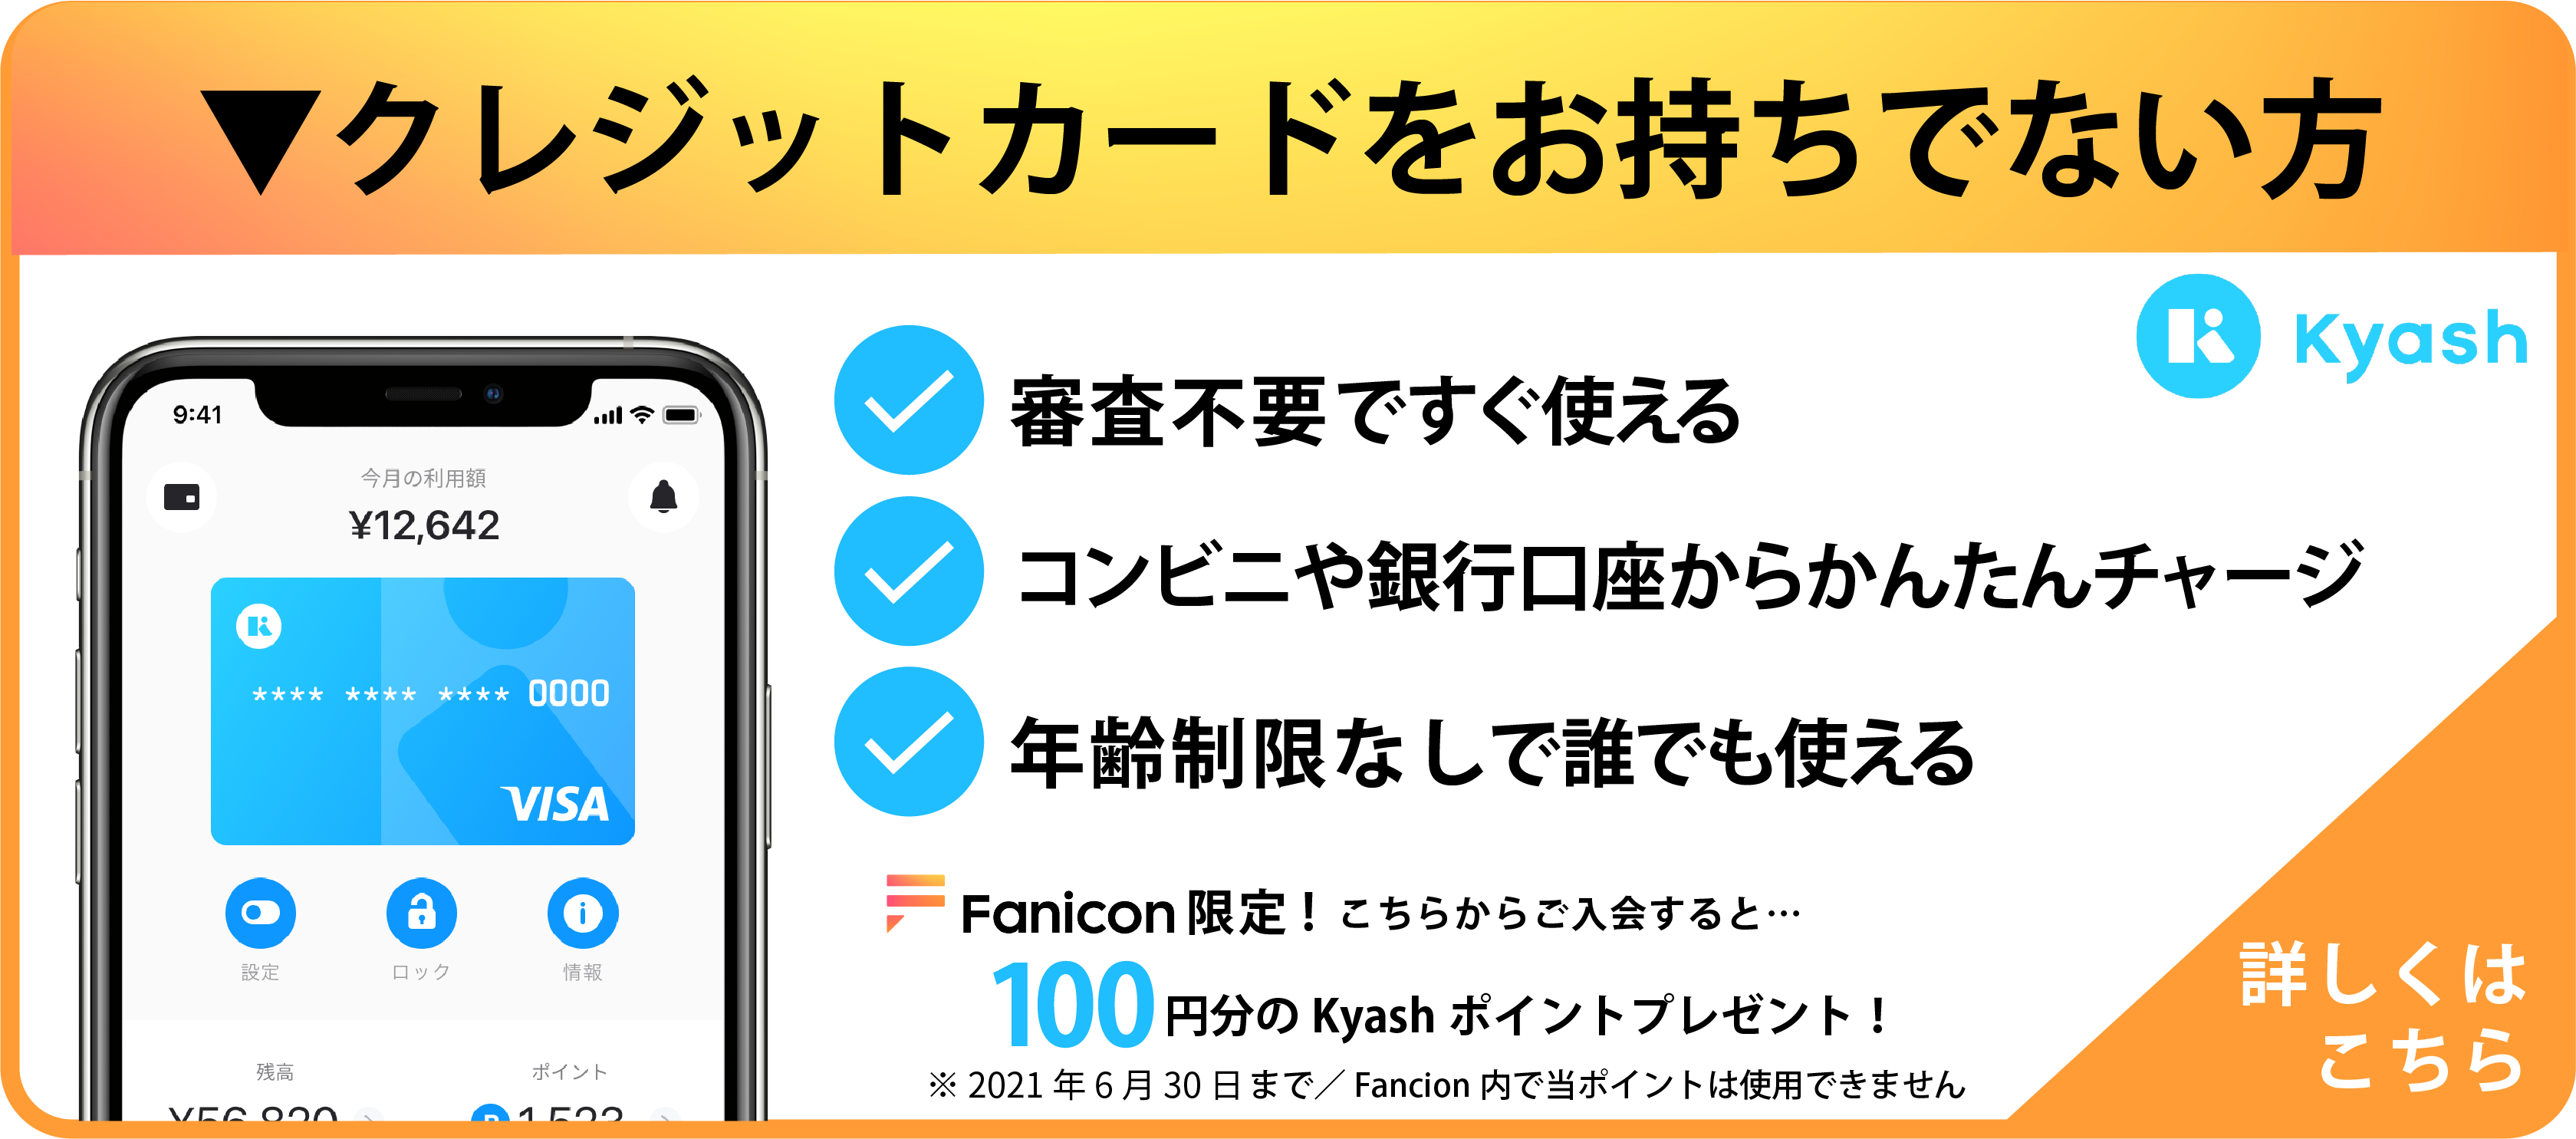 Fanicon専用 利用できるプリペイドカードについて教えてください Fanicon